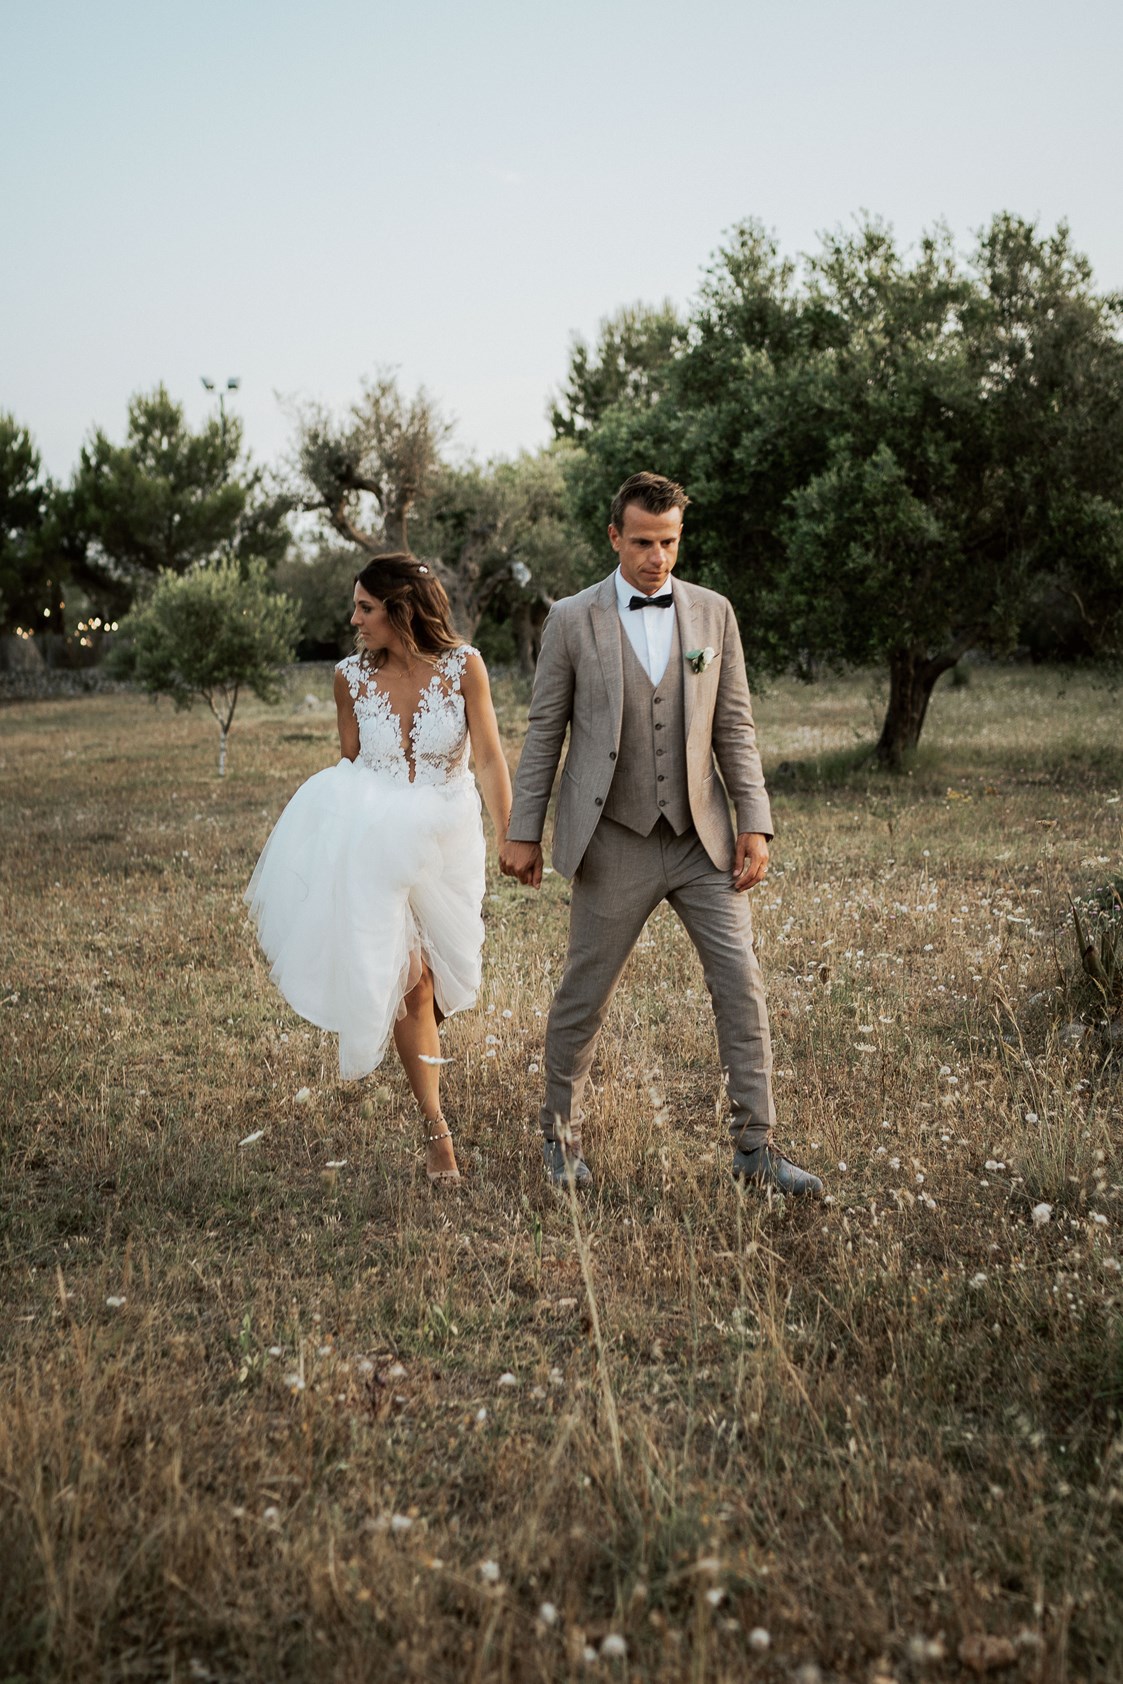 Hochzeitsfotograf: Hochzeit in Italien - Blitzkneisser